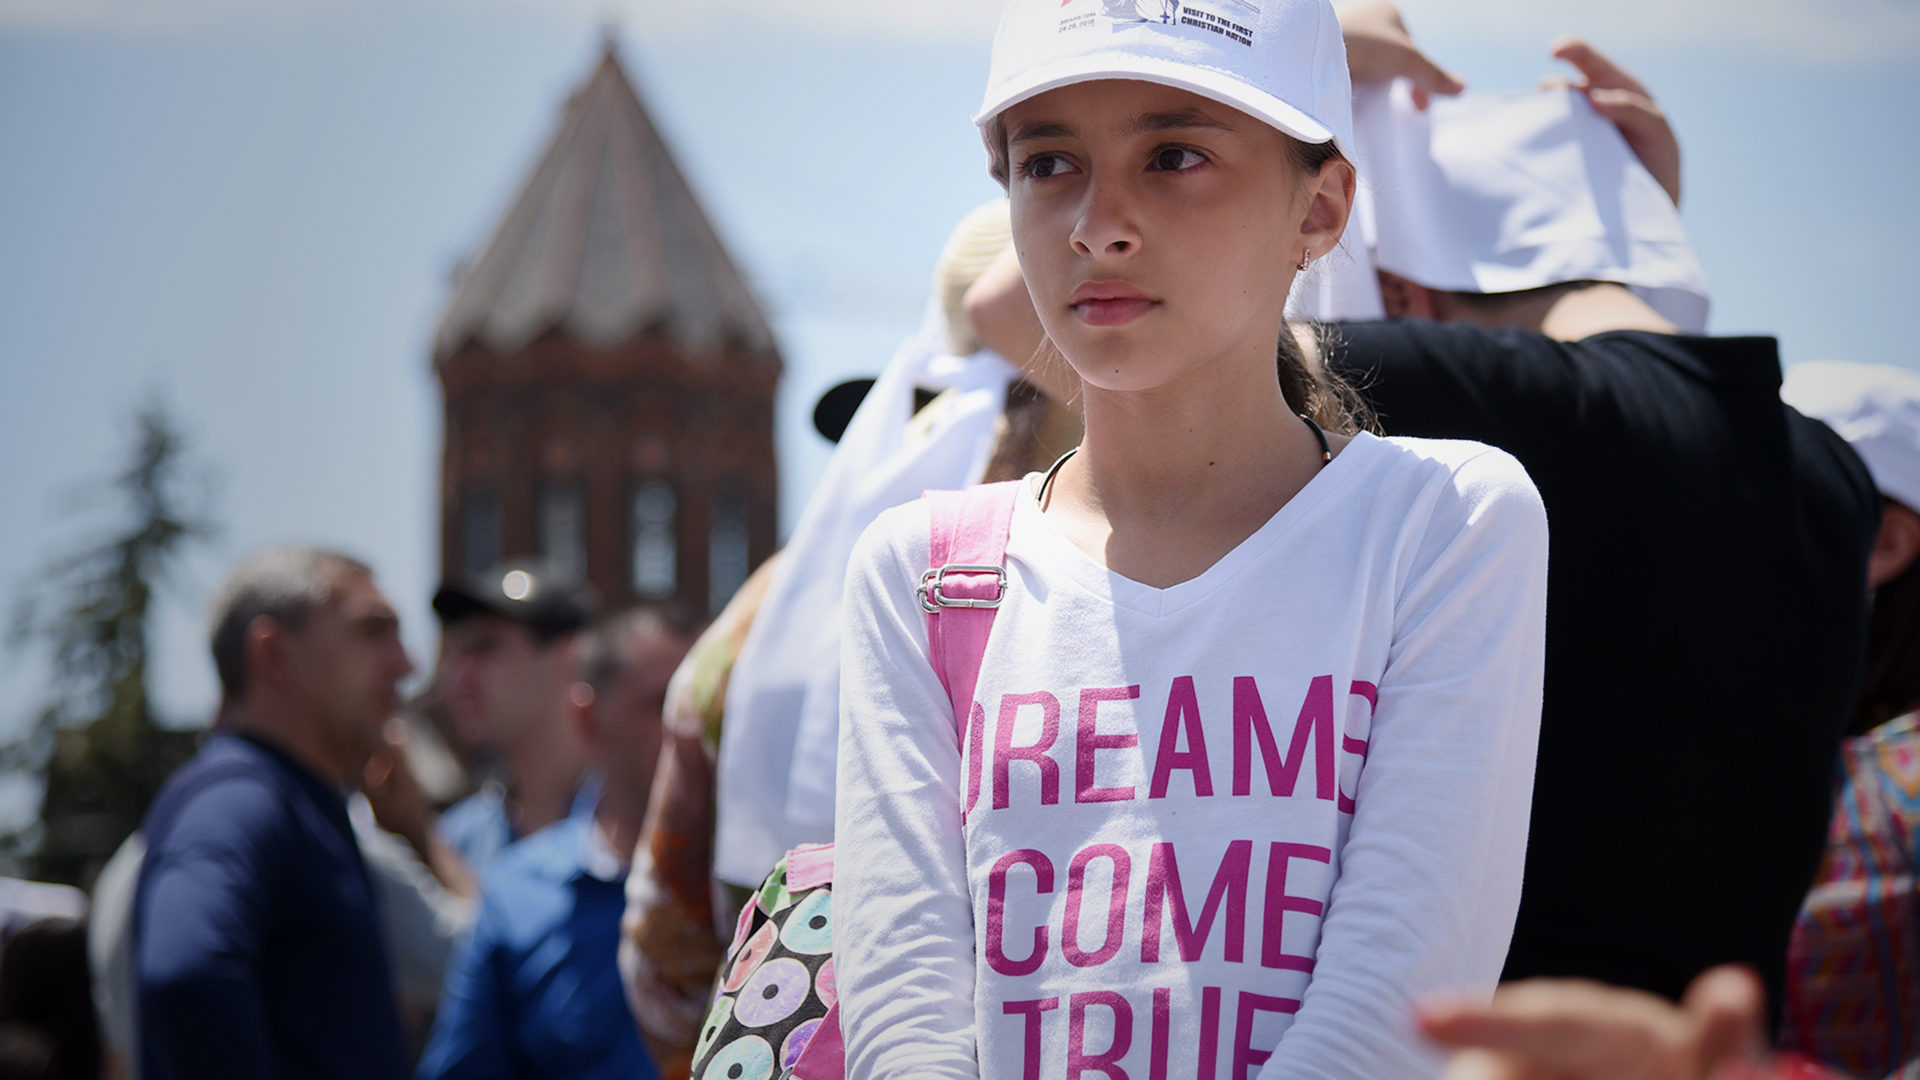 "Les rêves deviennent réalité" peut-on lire sur le t-shirt de cette petite fille, lors de la messe célébrée par le pape à Gyumri (Photo: Pierre Pistoletti)